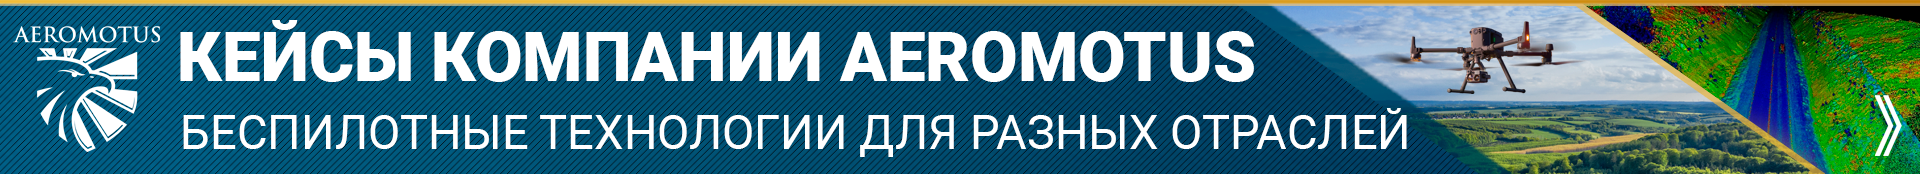 Обучение пилотированию БПЛА и обработке данных для сотрудников Алтайского Государственного Университета - Учебный центр Воздух